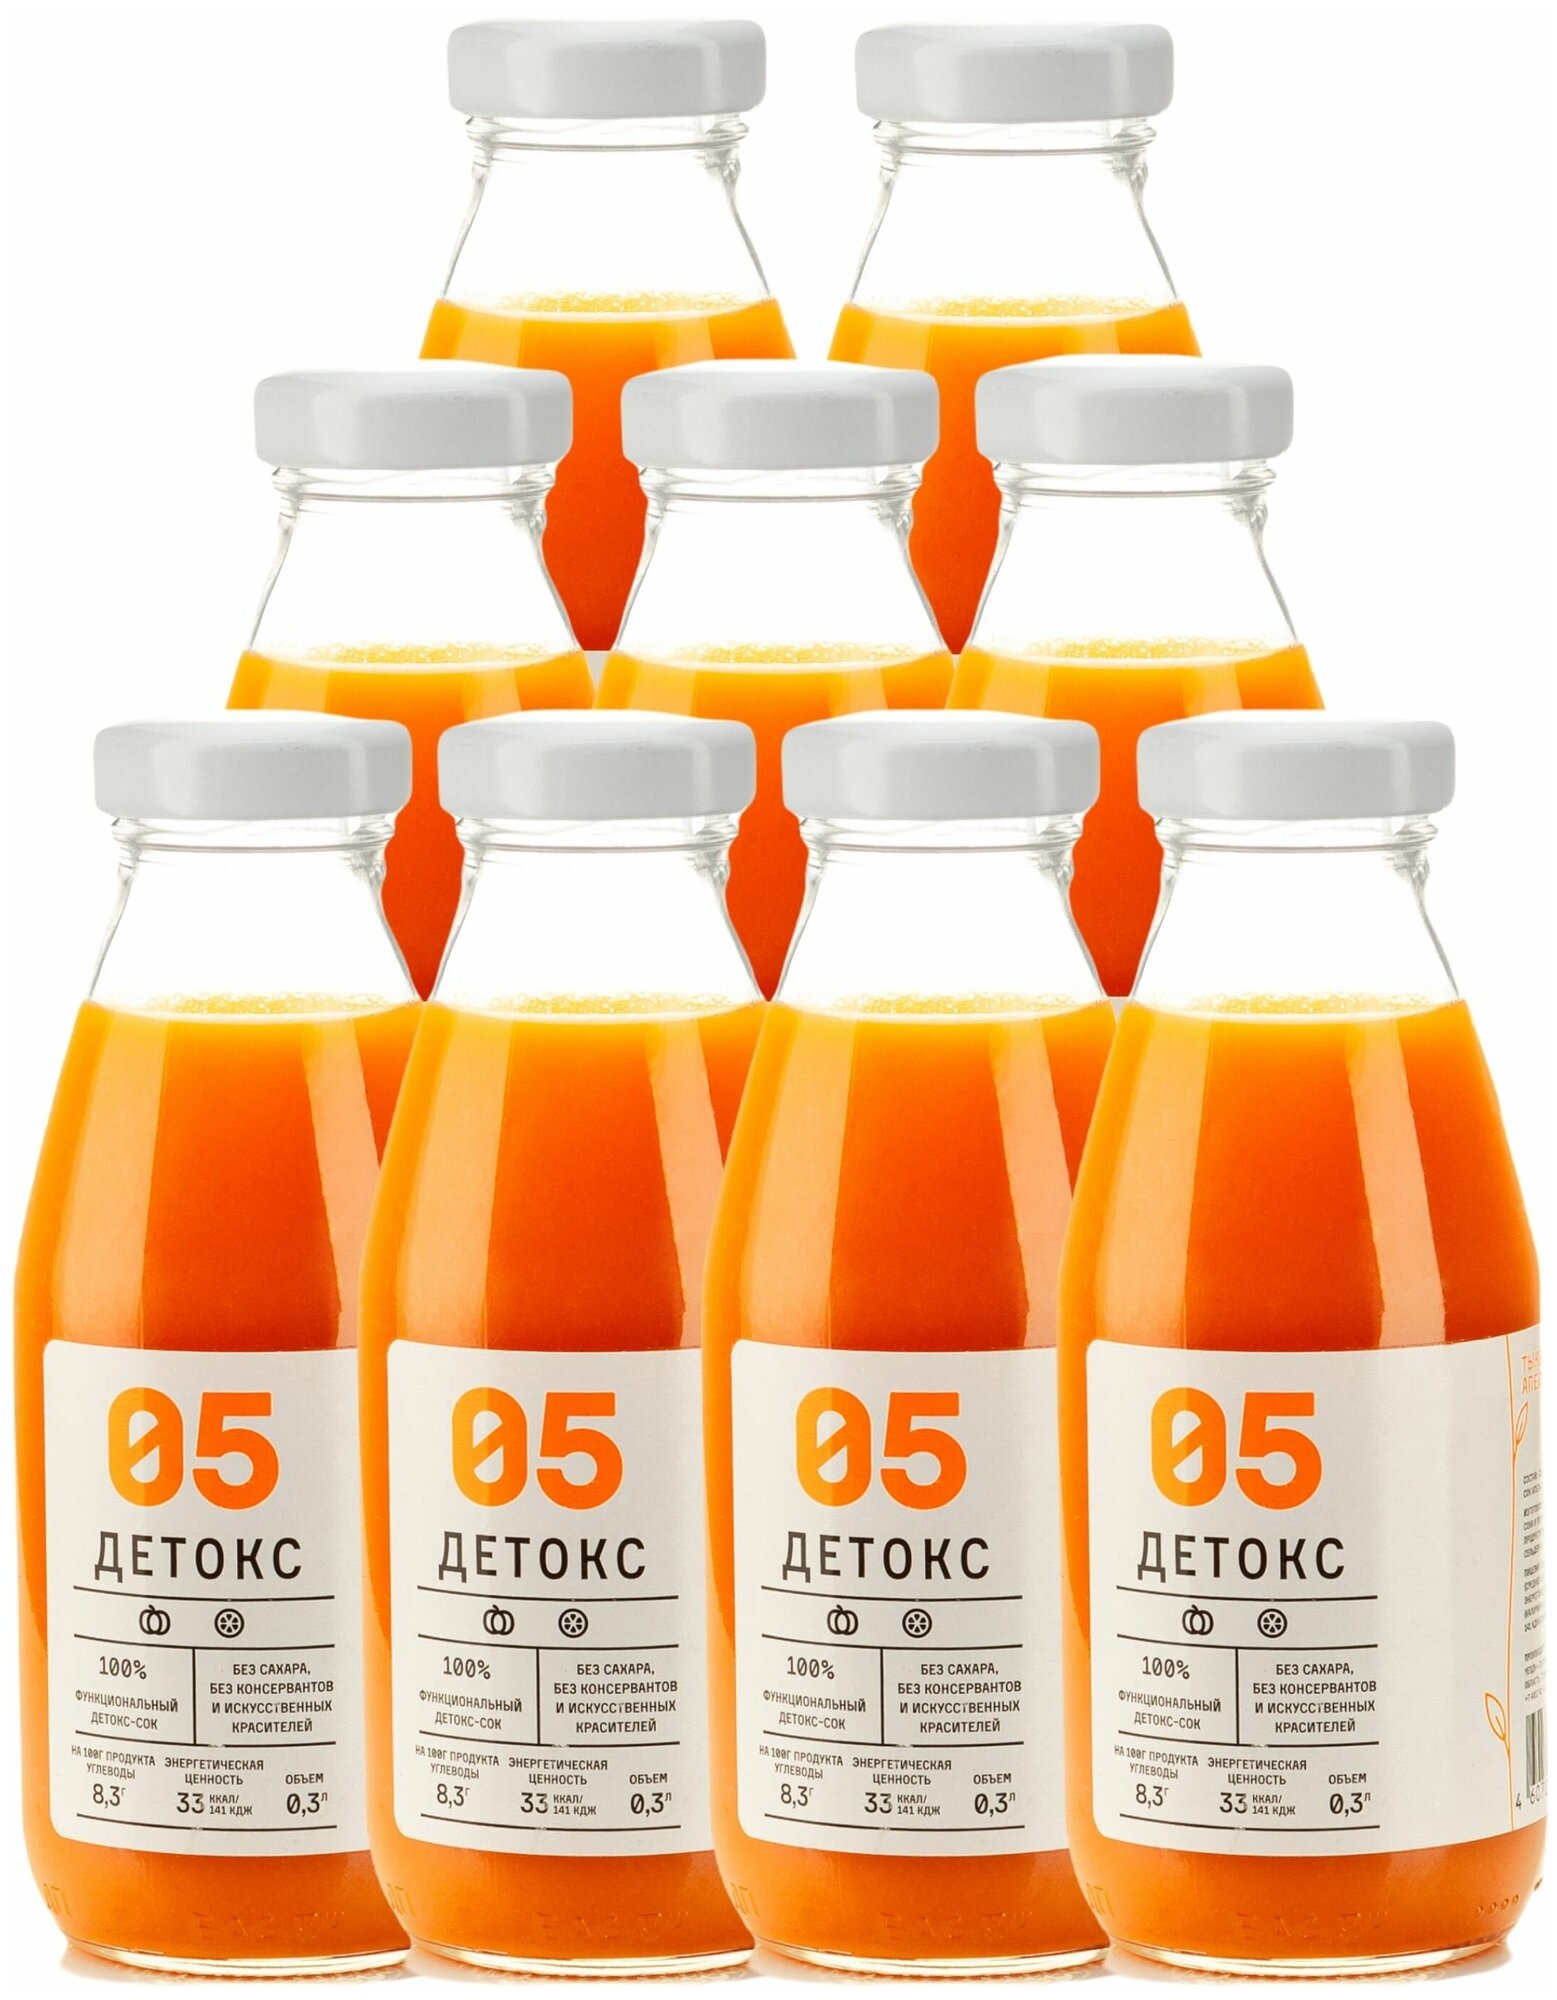 Сок детокс 05 натуральный без сахара для похудения без гмо тыква-апельсин, 9 шт по 300 мл, 4390 гр - фотография № 1